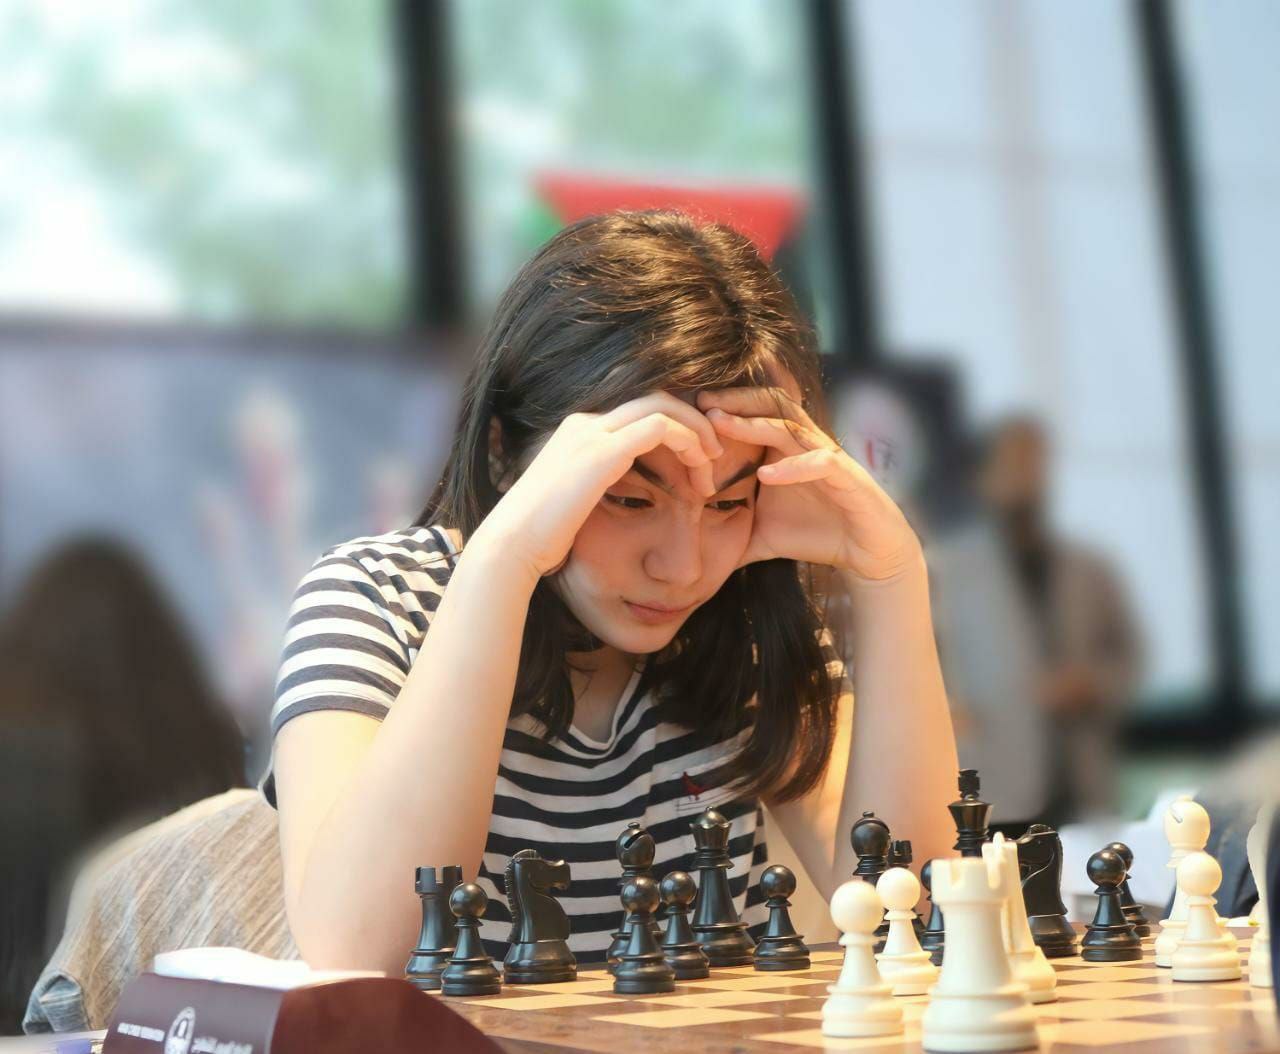 المركز الثالث في بطولة بليتز الشطرنج لـ"فاطمة أبوطعام"